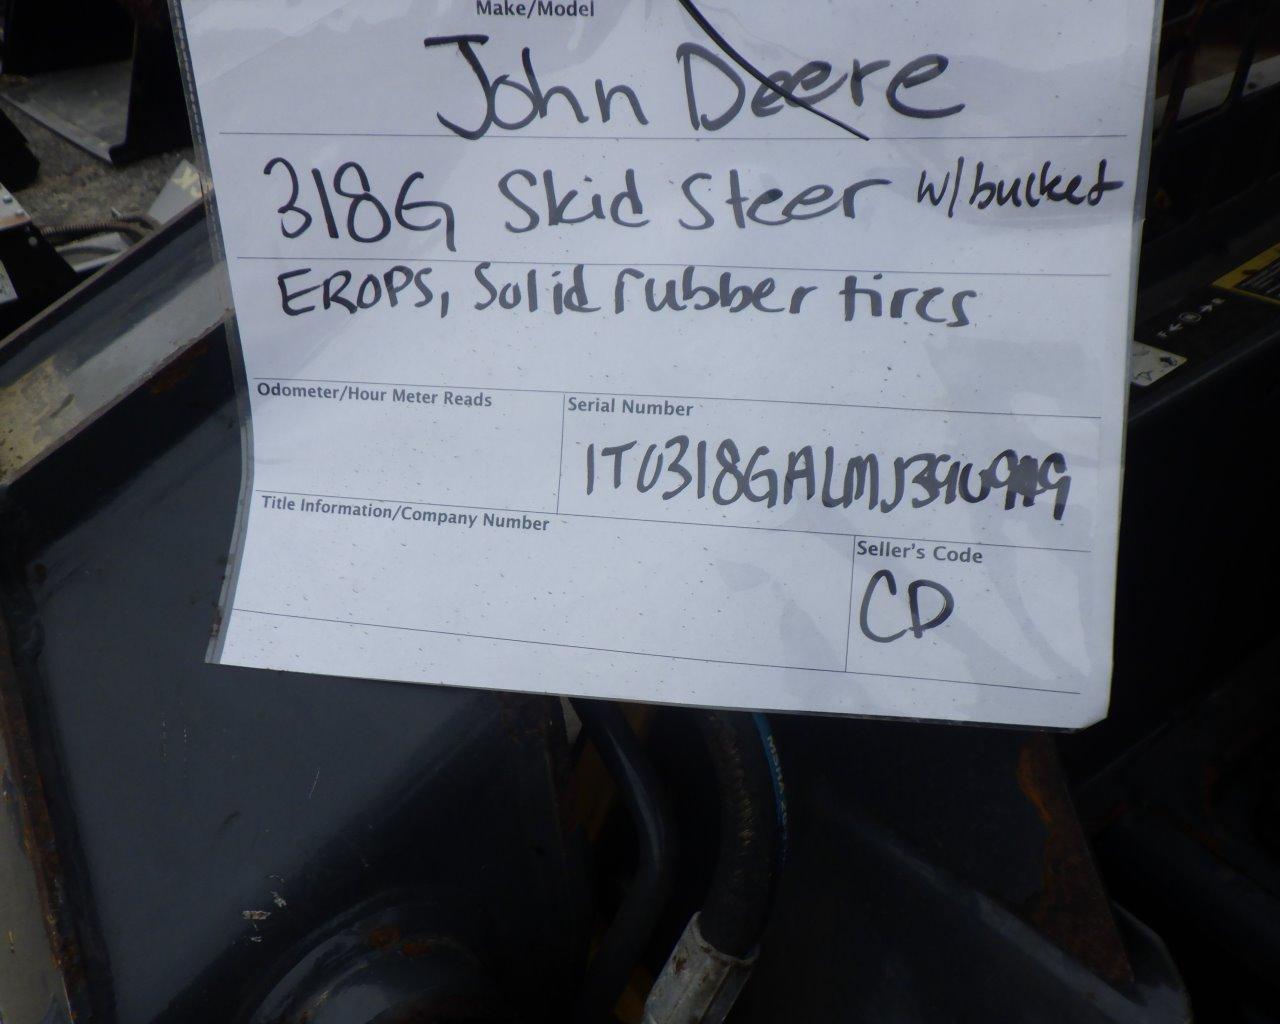 JOHN DEERE 318G Skid Steer Loader w/Bucket   Solid Rubber Tires   EROPS s/n